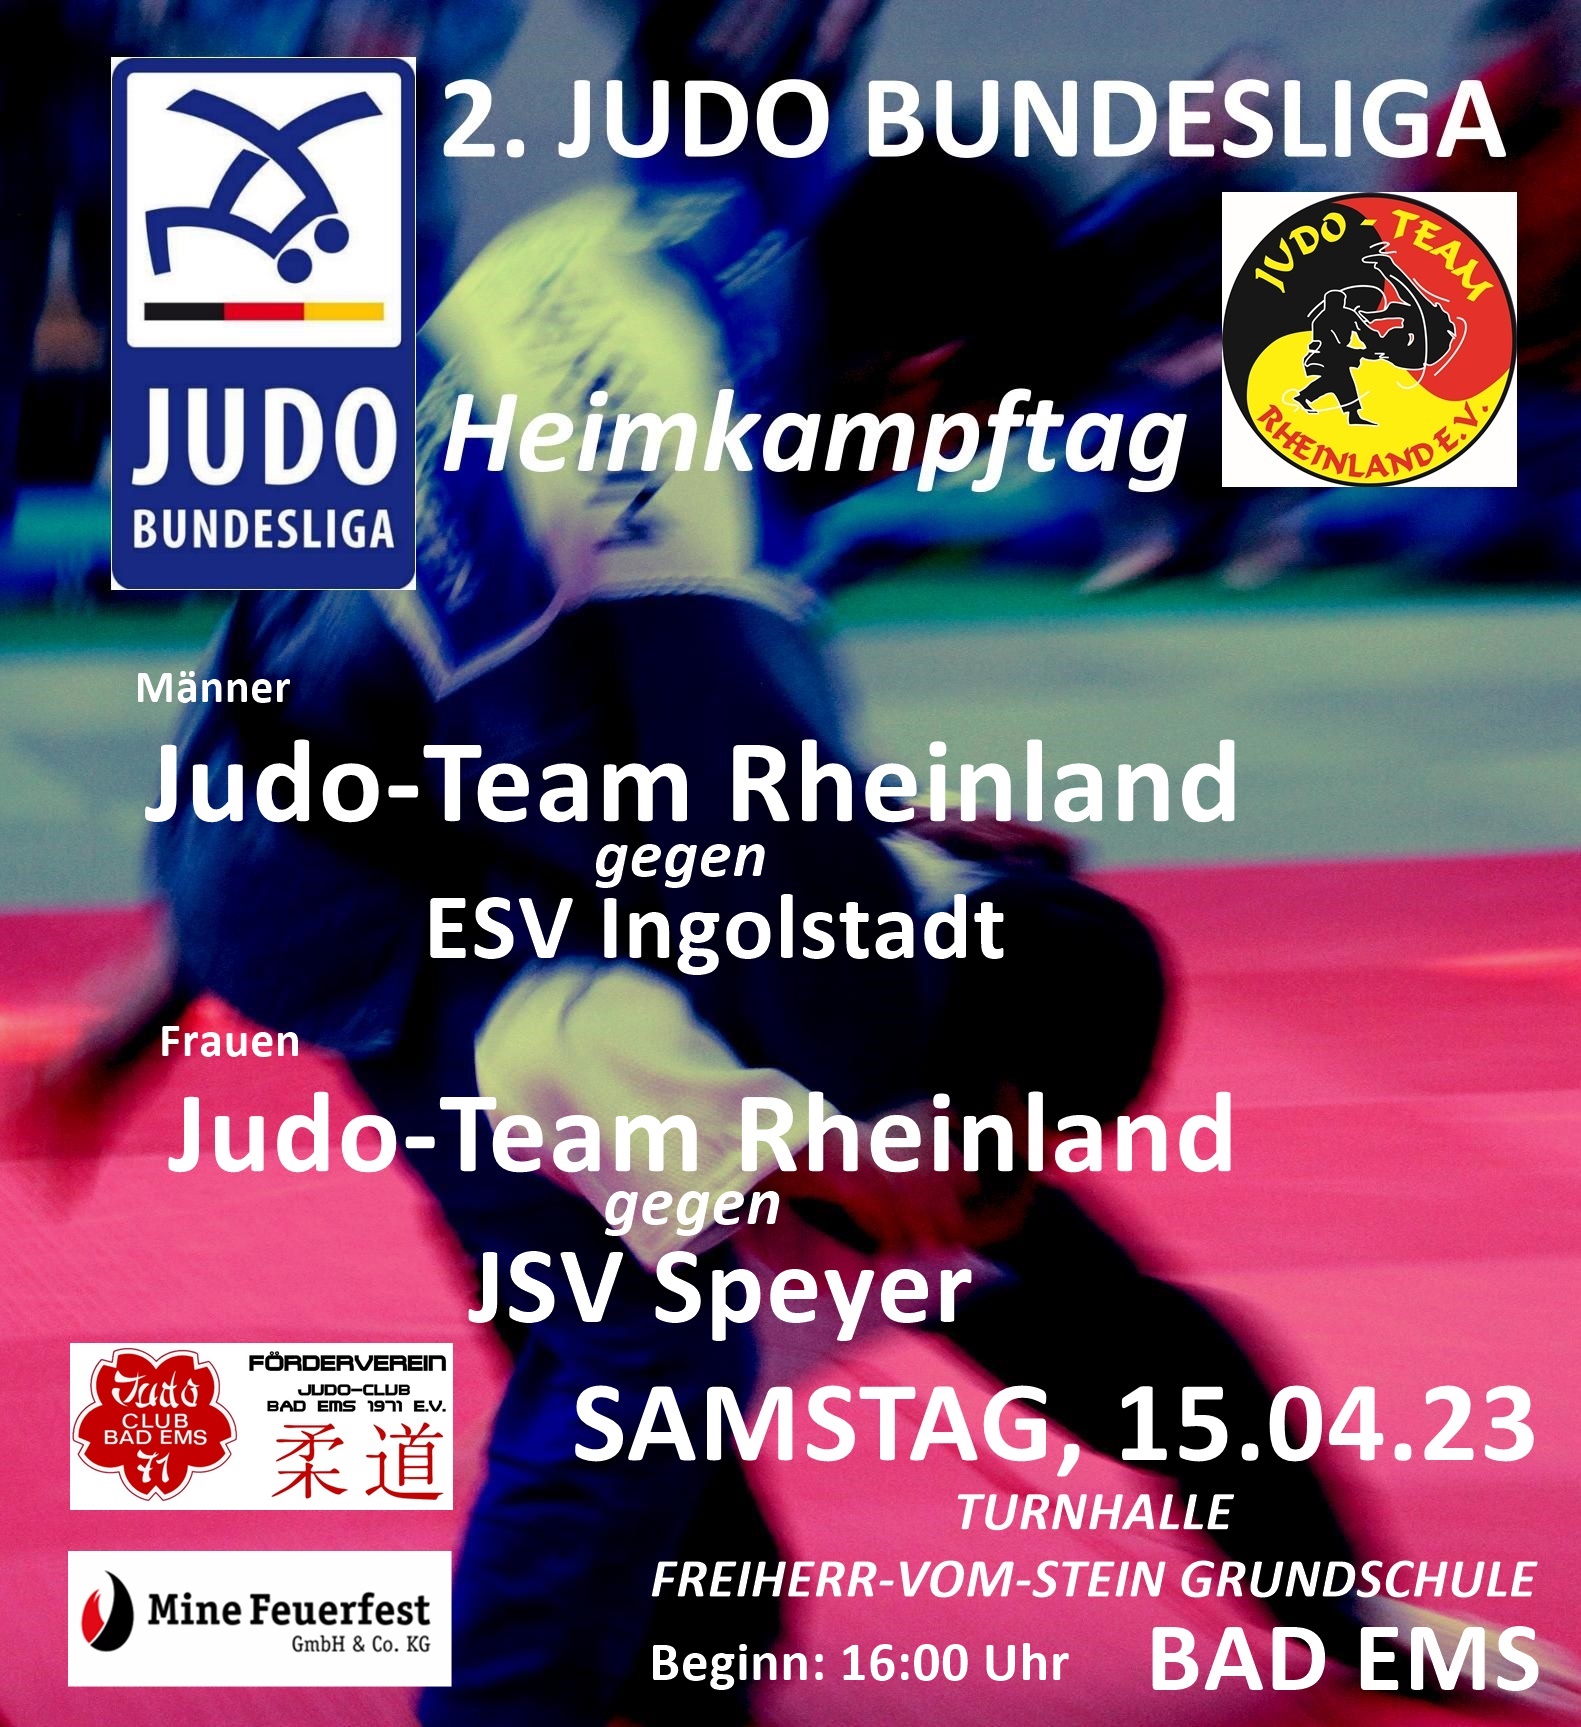 Judo Bundesliga am kommenden Samstag